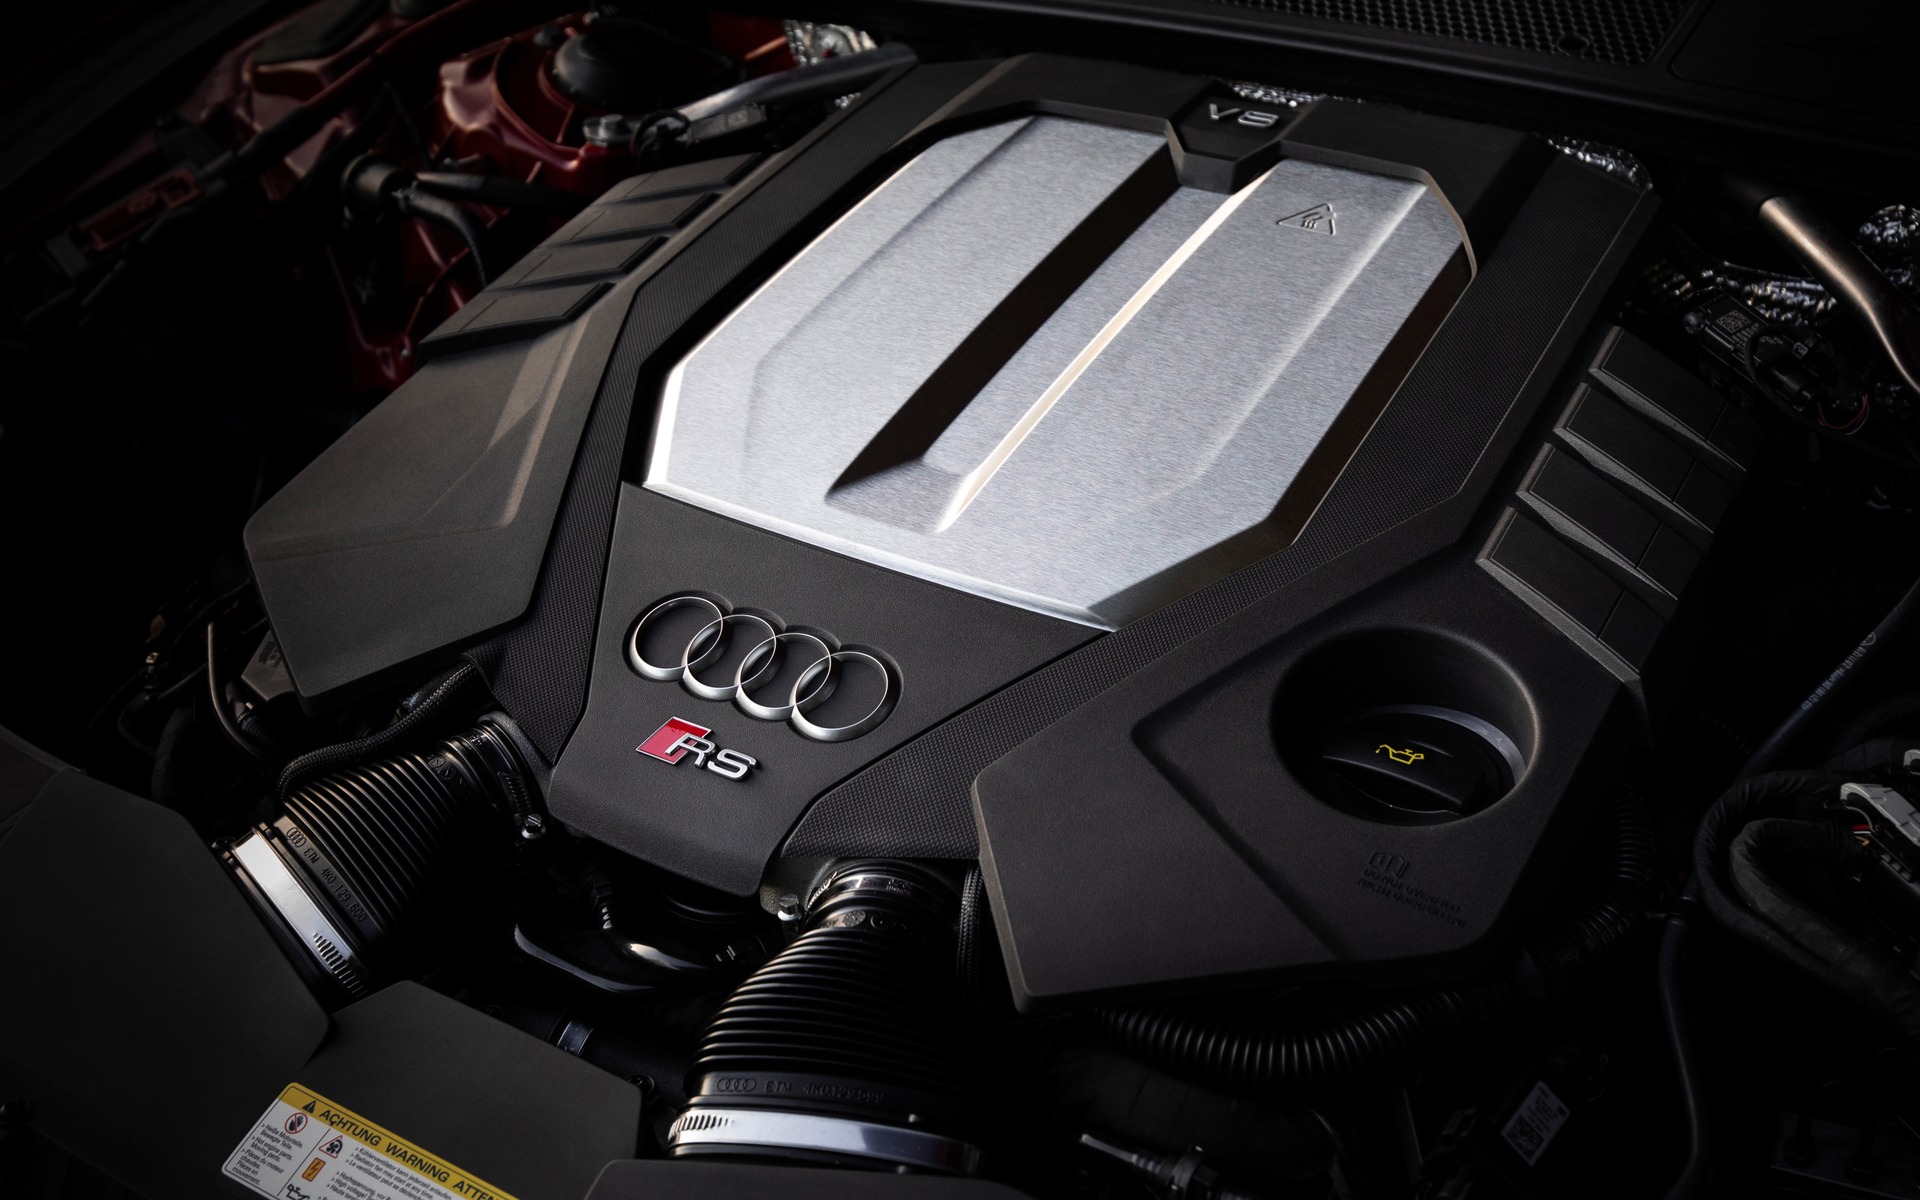 <p>Audi RS 7 Sportback 2020</p>